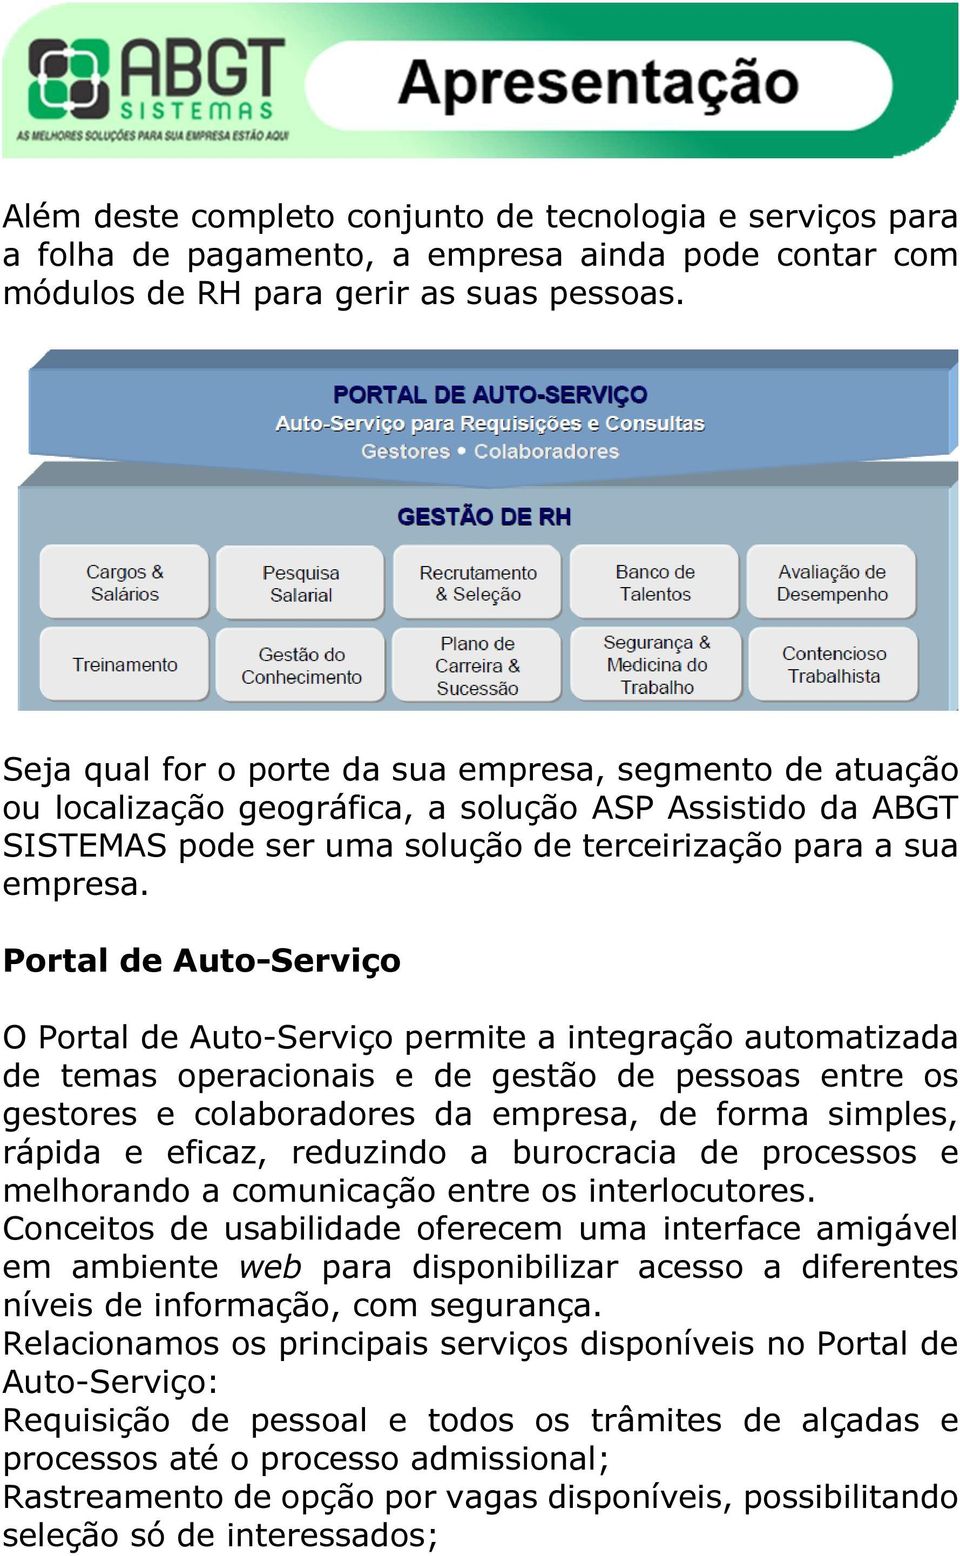 Portal de Auto-Serviço O Portal de Auto-Serviço permite a integração automatizada de temas operacionais e de gestão de pessoas entre os gestores e colaboradores da empresa, de forma simples, rápida e